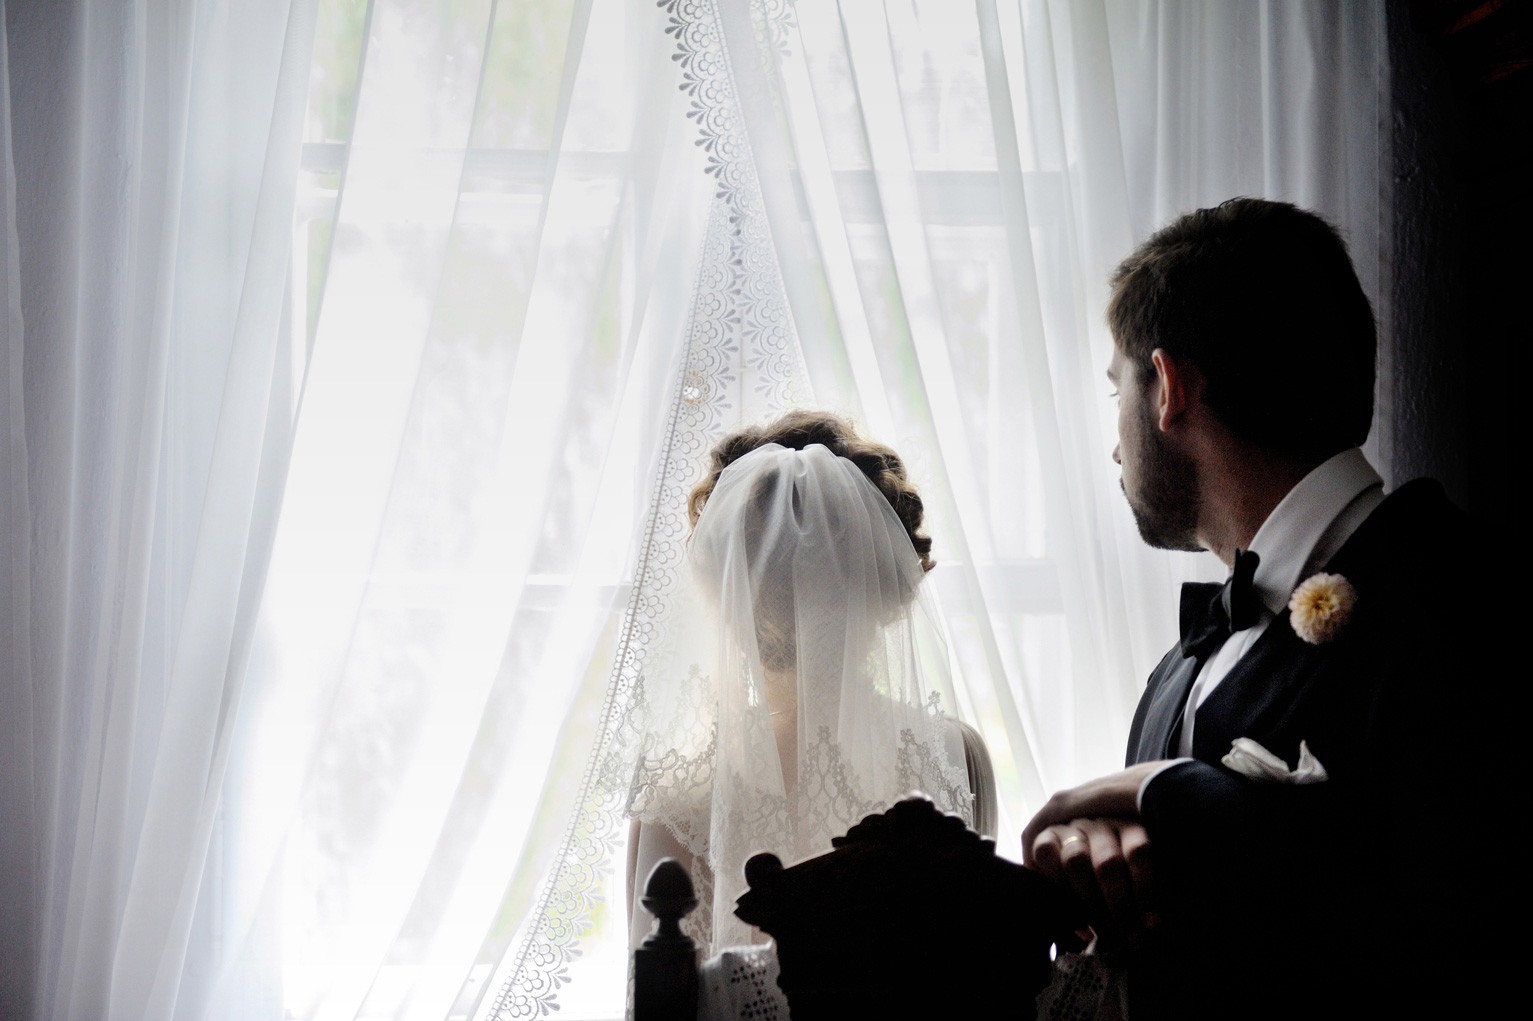 fotograf kielce eryk-pajaczkowski-oto-foto portfolio zdjecia slubne inspiracje wesele plener slubny sesja slubna